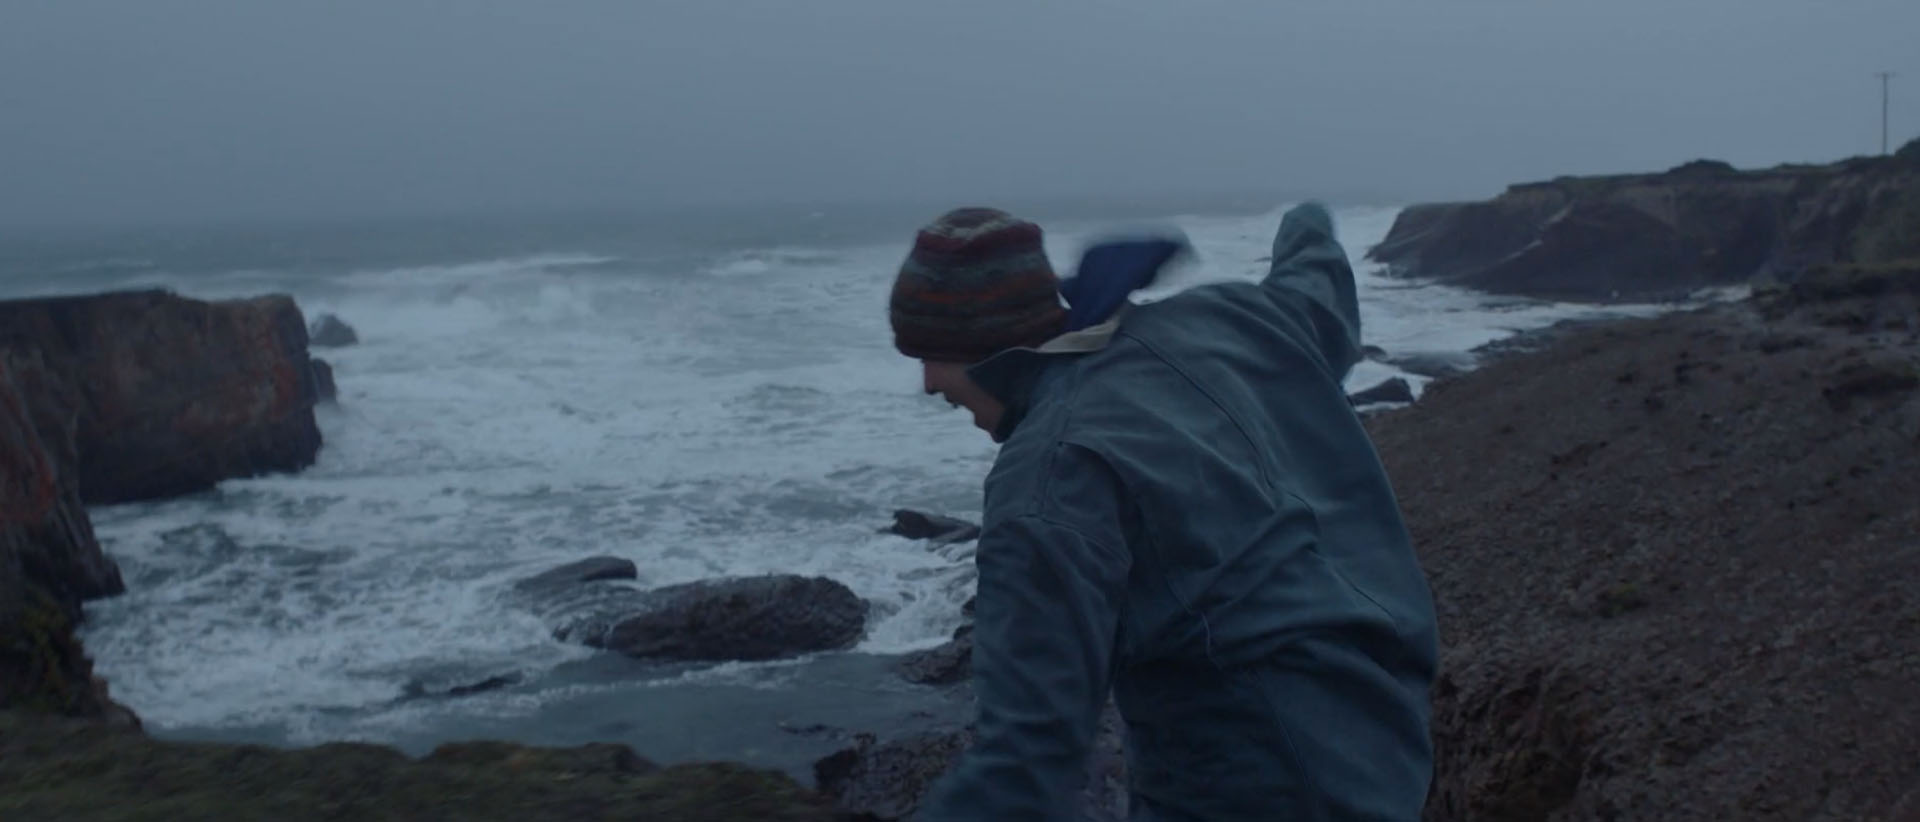 Fern at the cliffs - a film still from "Nomadland".